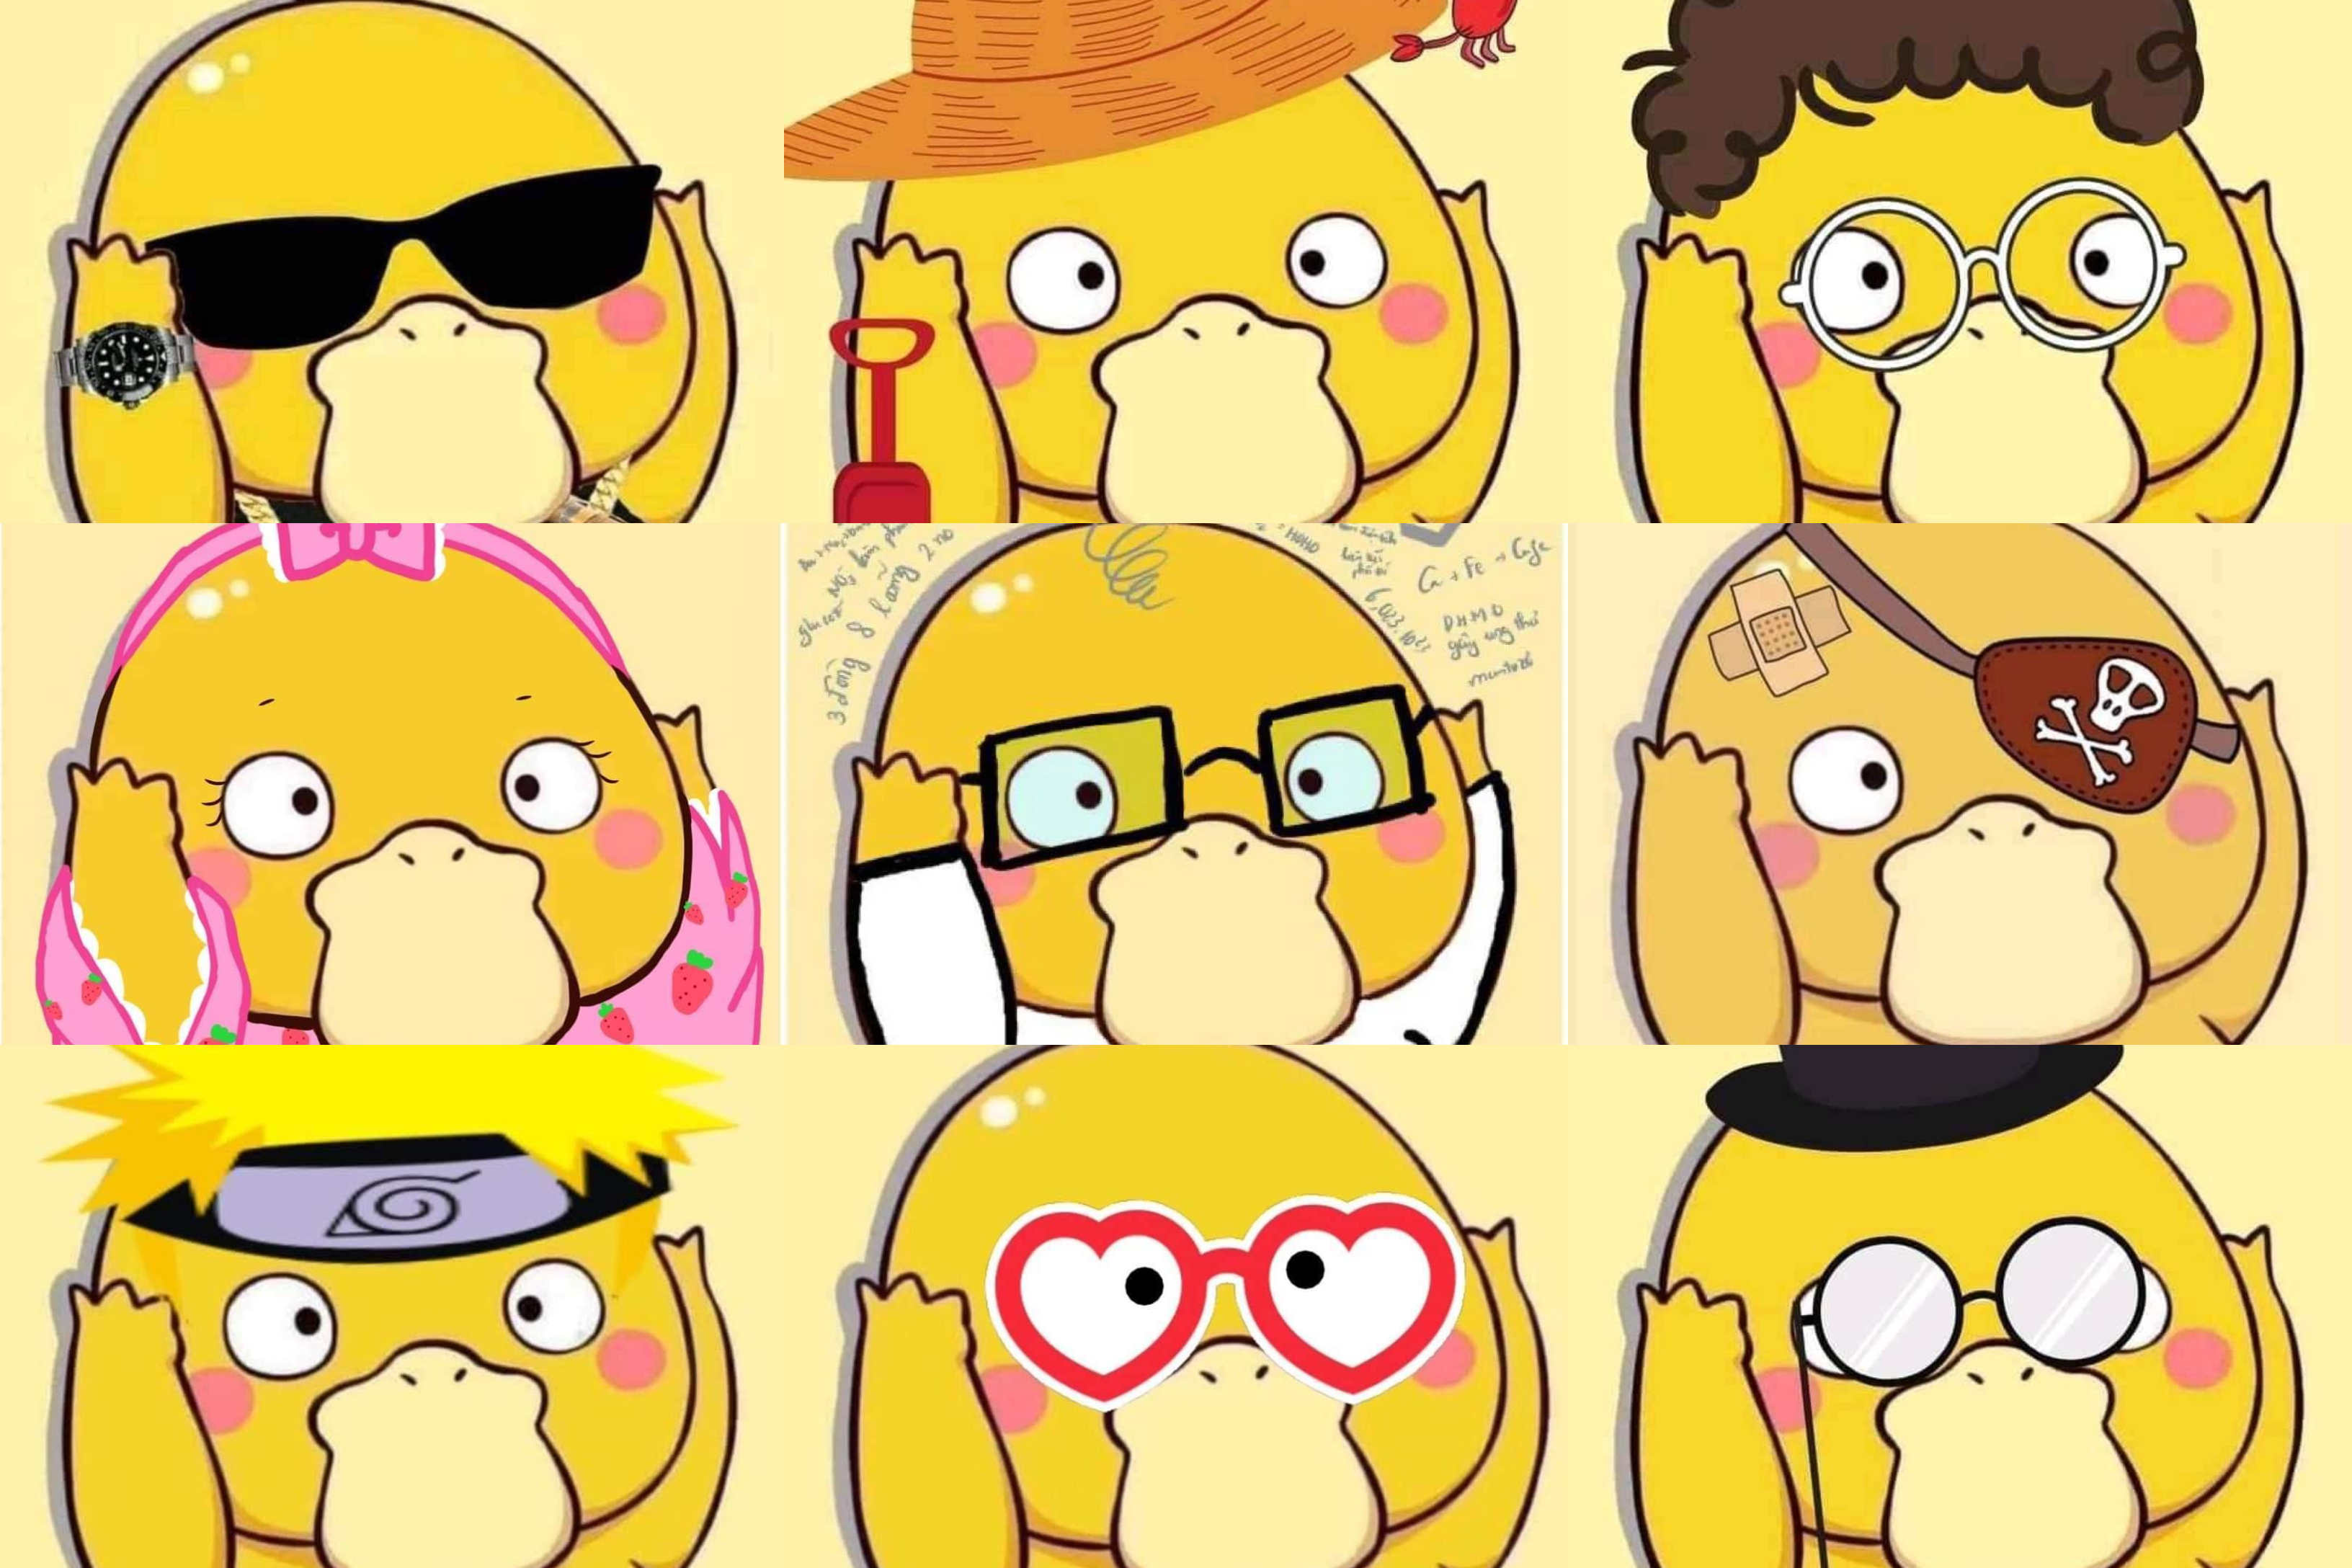 Dân mạng đú trend facebook đổi avatar thành con vịt vàng trong series  Pokémon nổi tiếng